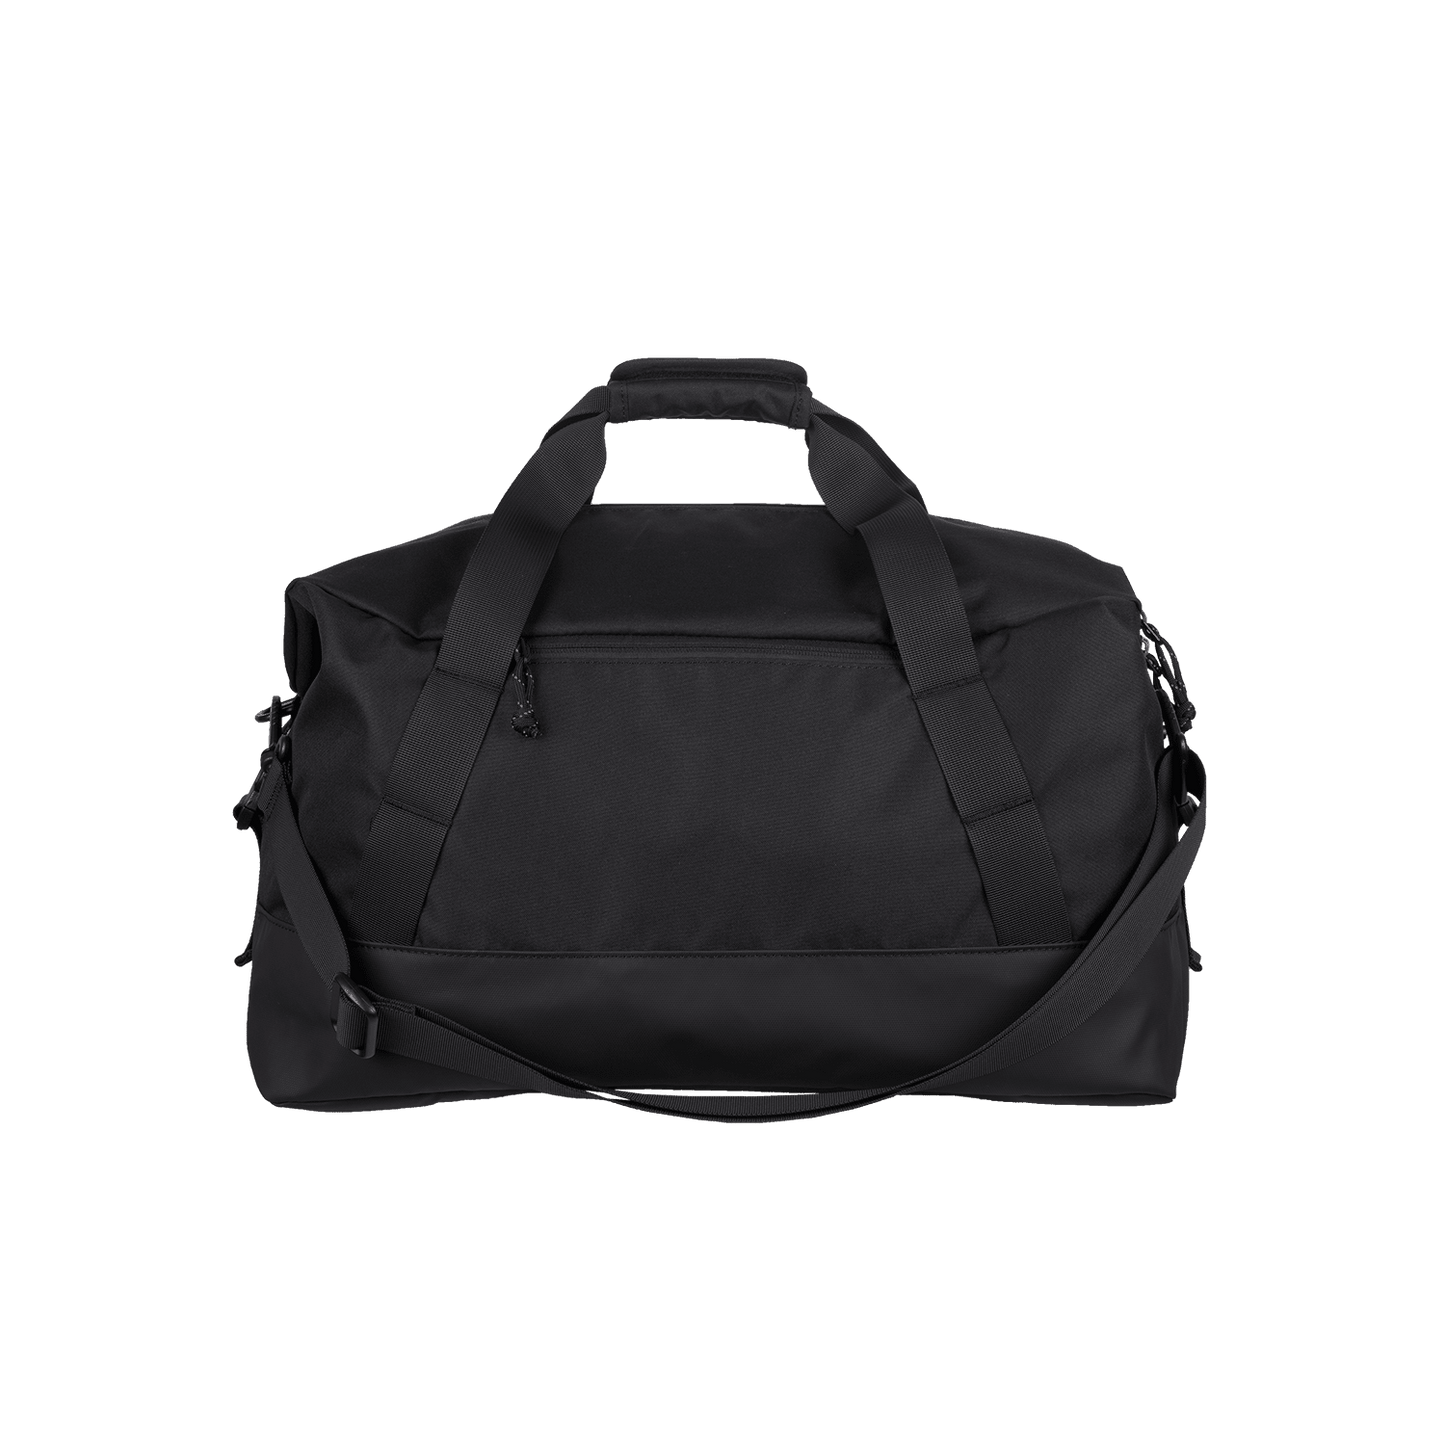 Orlando Duffle Bag